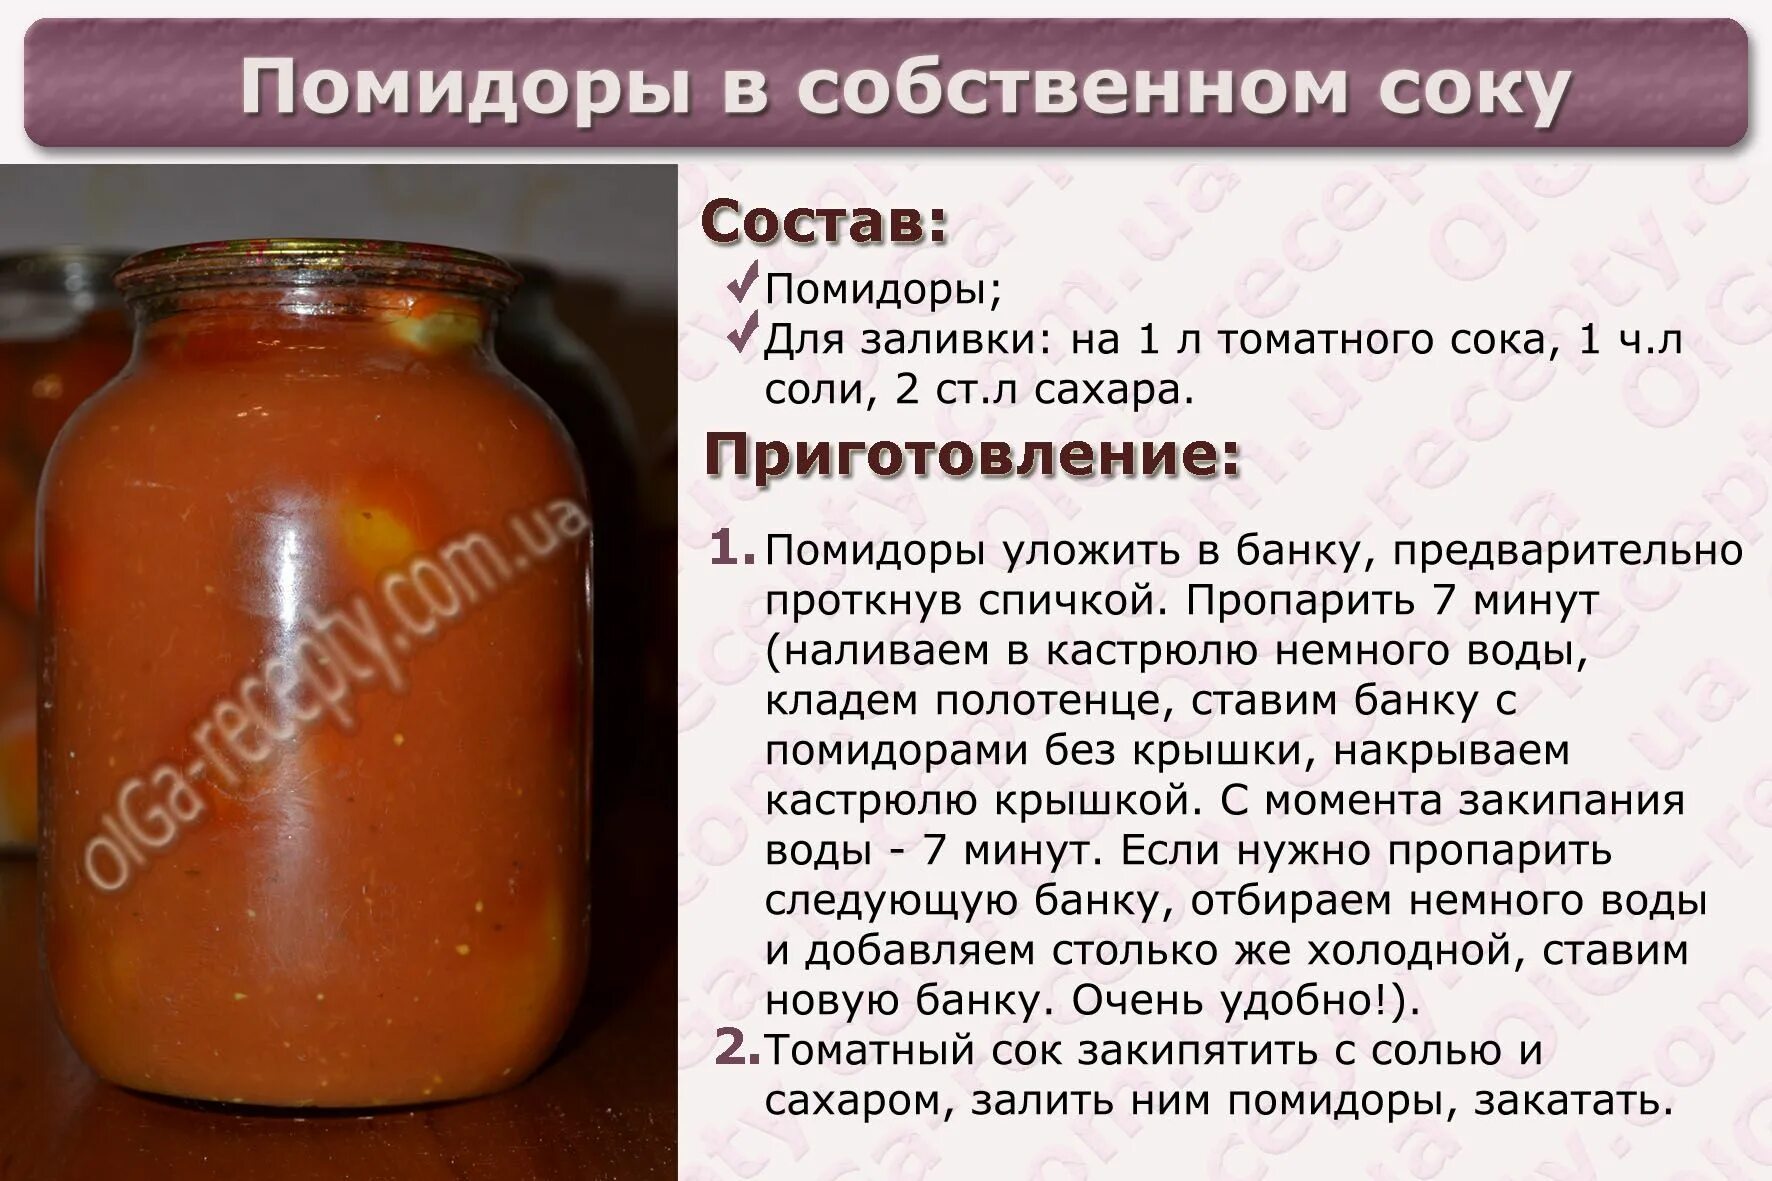 Сок томатный на 1 литр соли. Помидоры в собственном соку. Помидоры в собственном соку в банке. Помидоры в собственном соку рецепт. Помидоры в собственном соку на литровую банку.